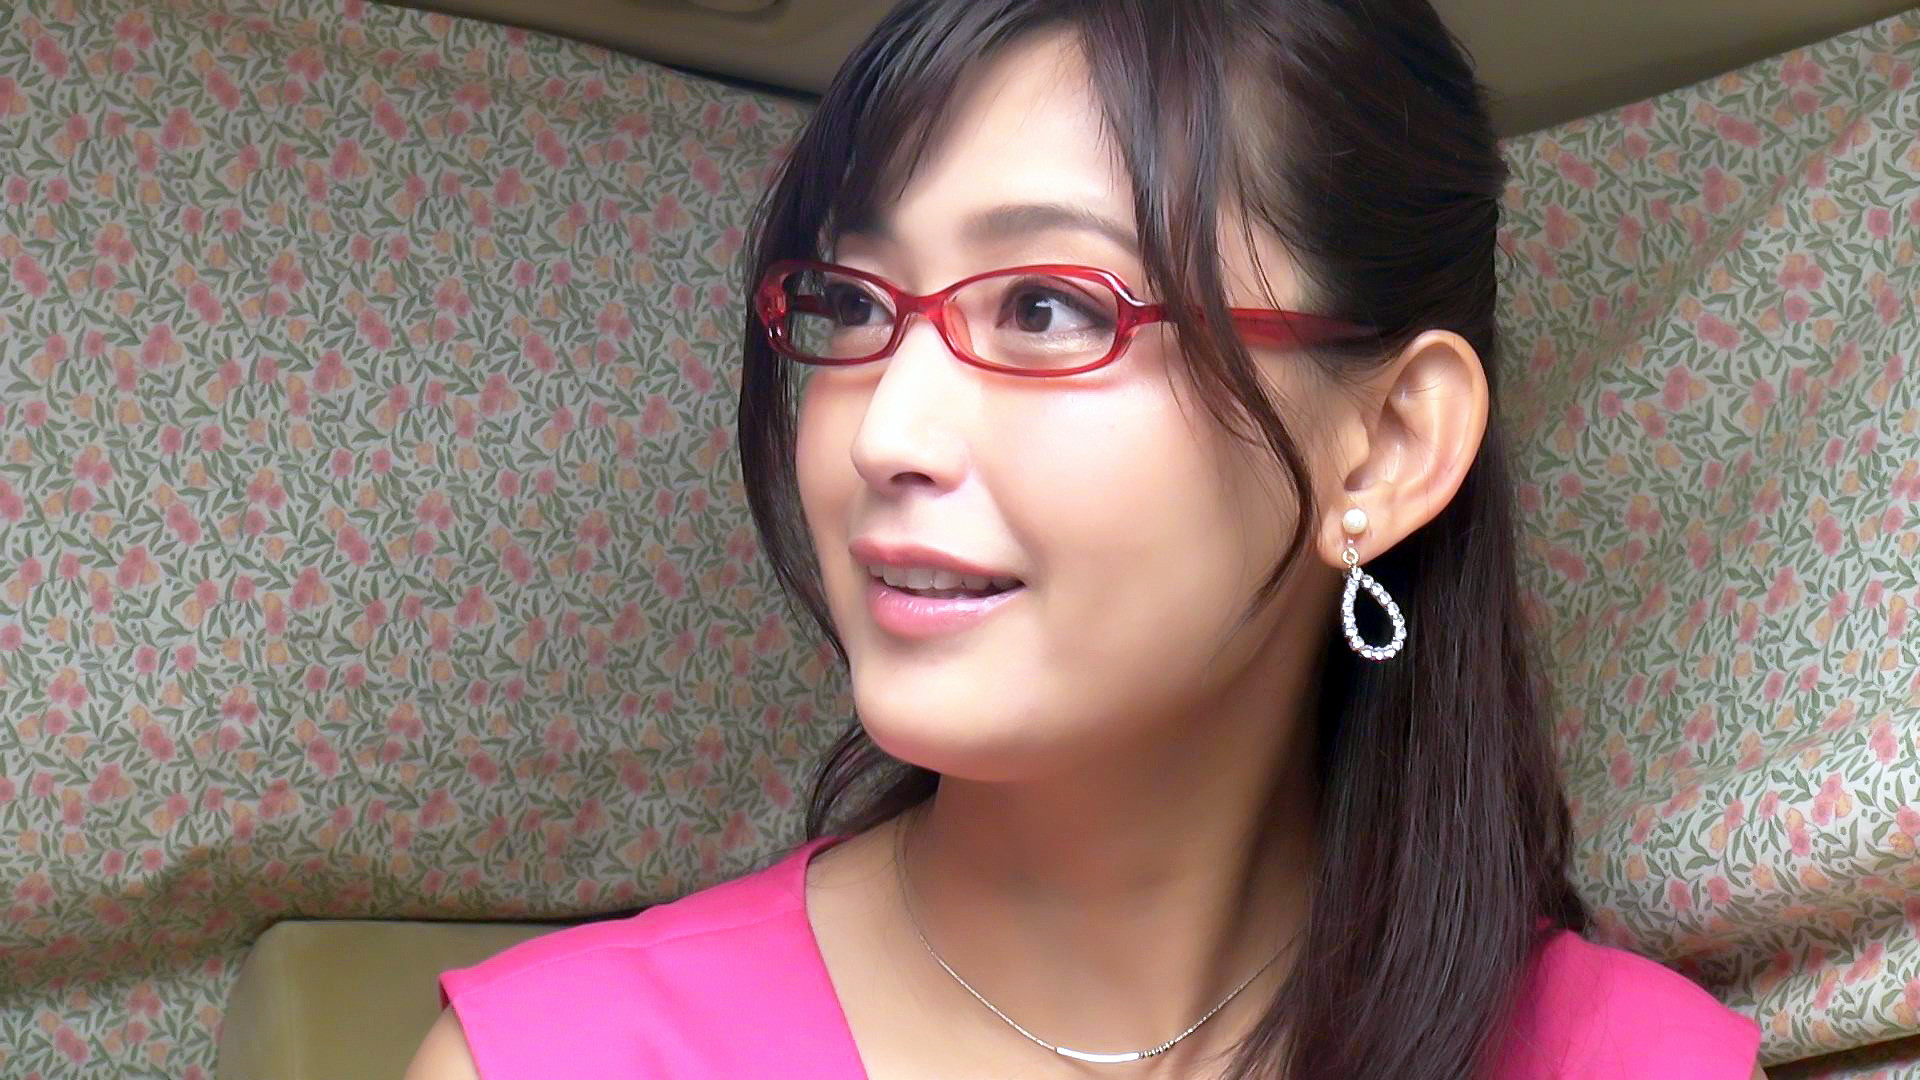 塔子さん 38歳 眼鏡がお似合いの奥さま 【セレブ奥さま】 画像1